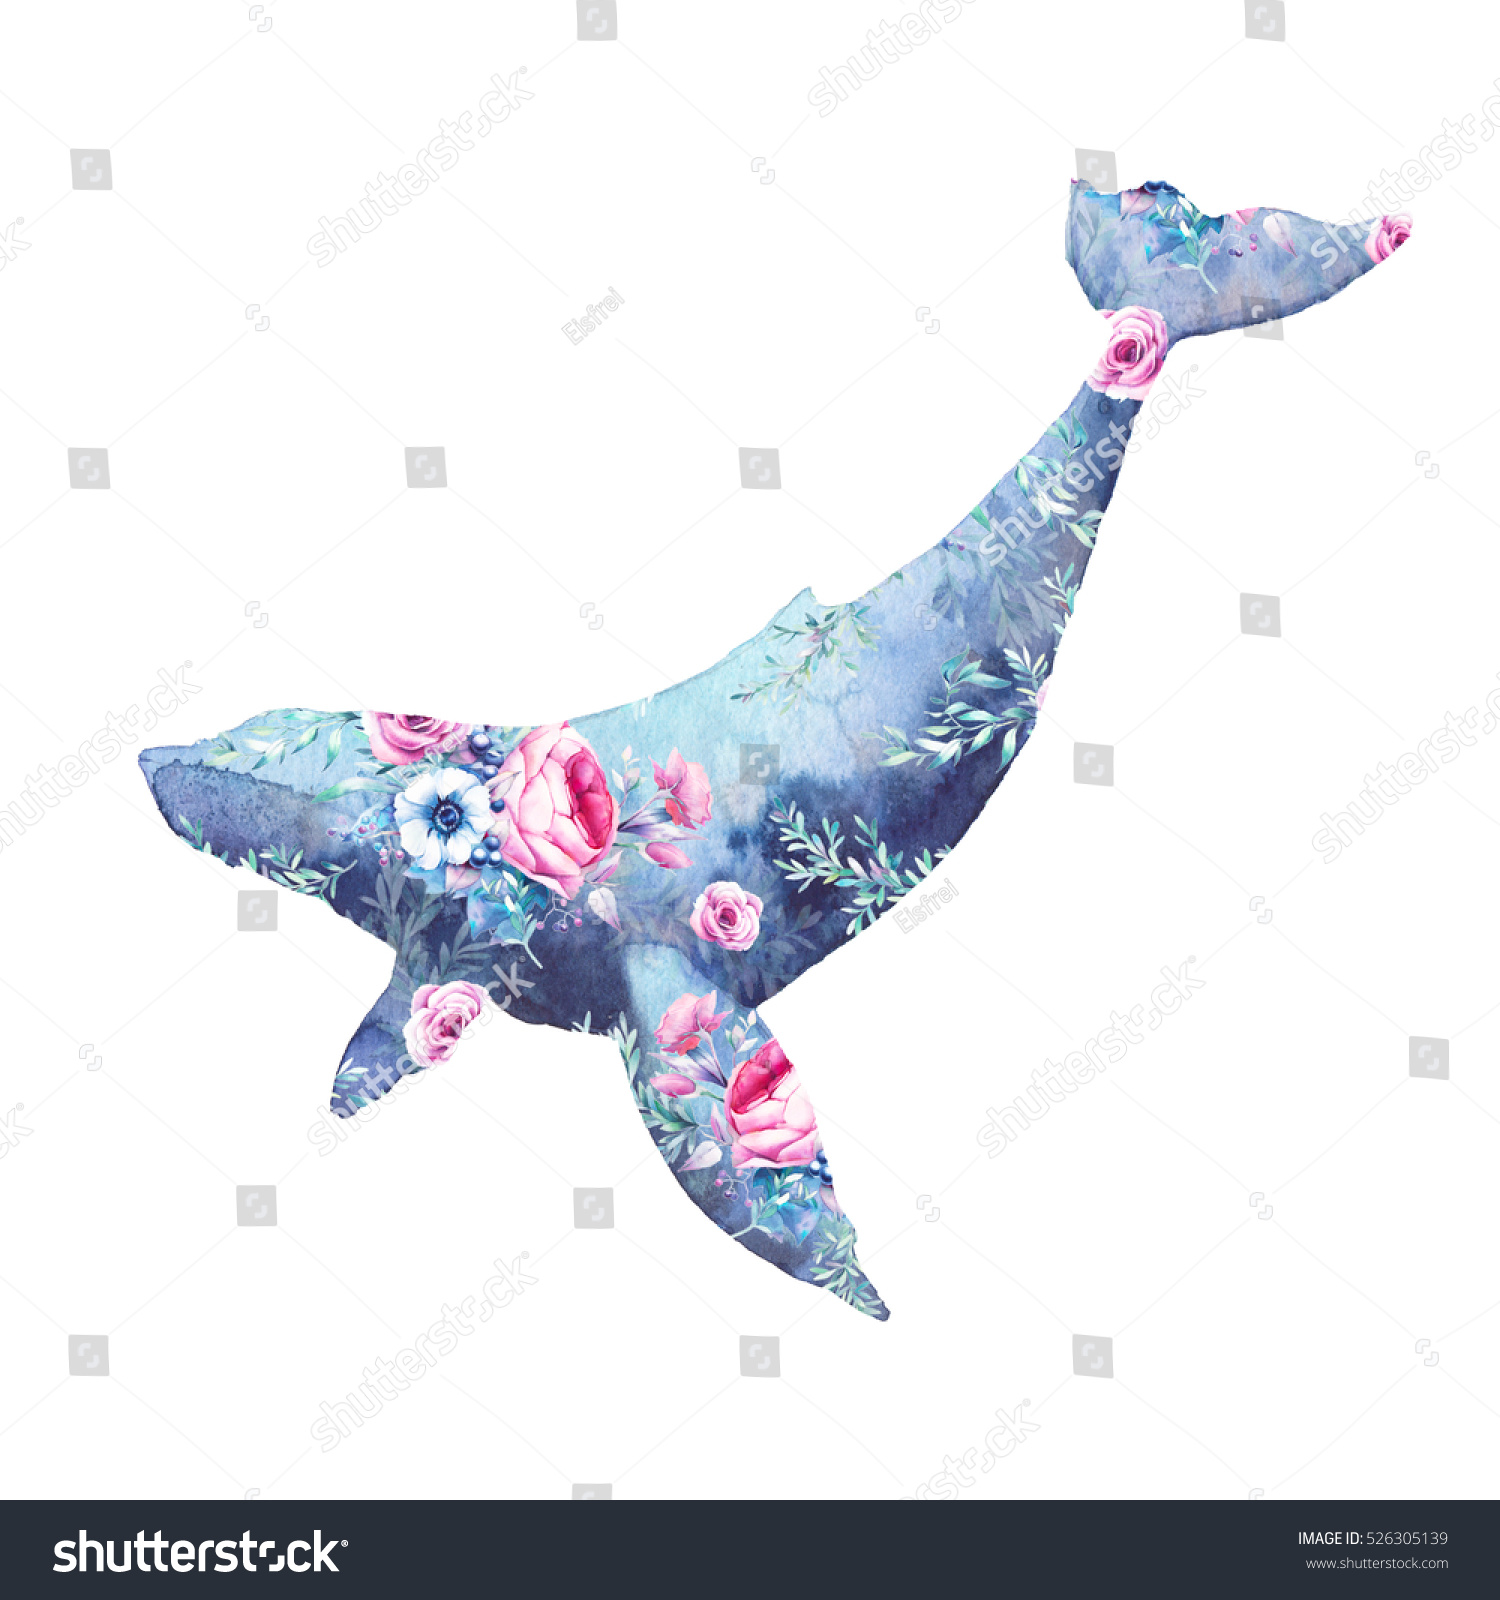 鯨と花の絵 ブルーホジラとアネモネ バラ 牡丹ブーケ柄の水彩画 白い背景に手描きの動物のシルエット クリエイティブな自然イラスト のイラスト素材